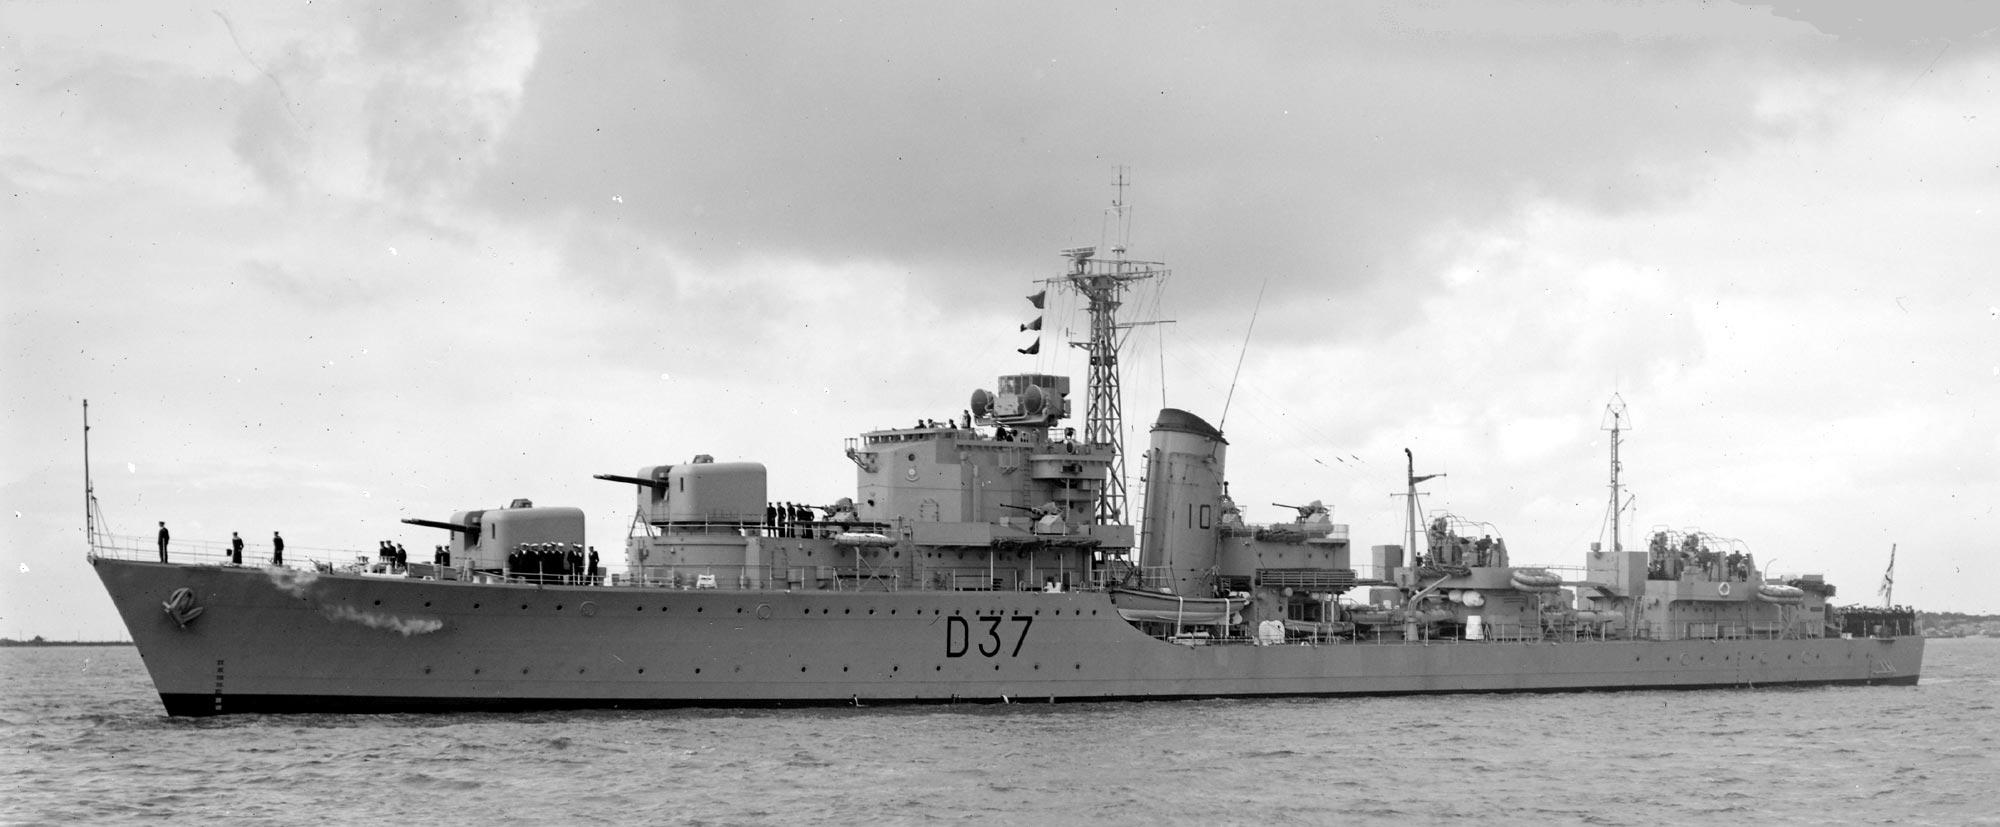 1111 1 марта 1952  HMAS Тобрук  в Мельбурне.jpg